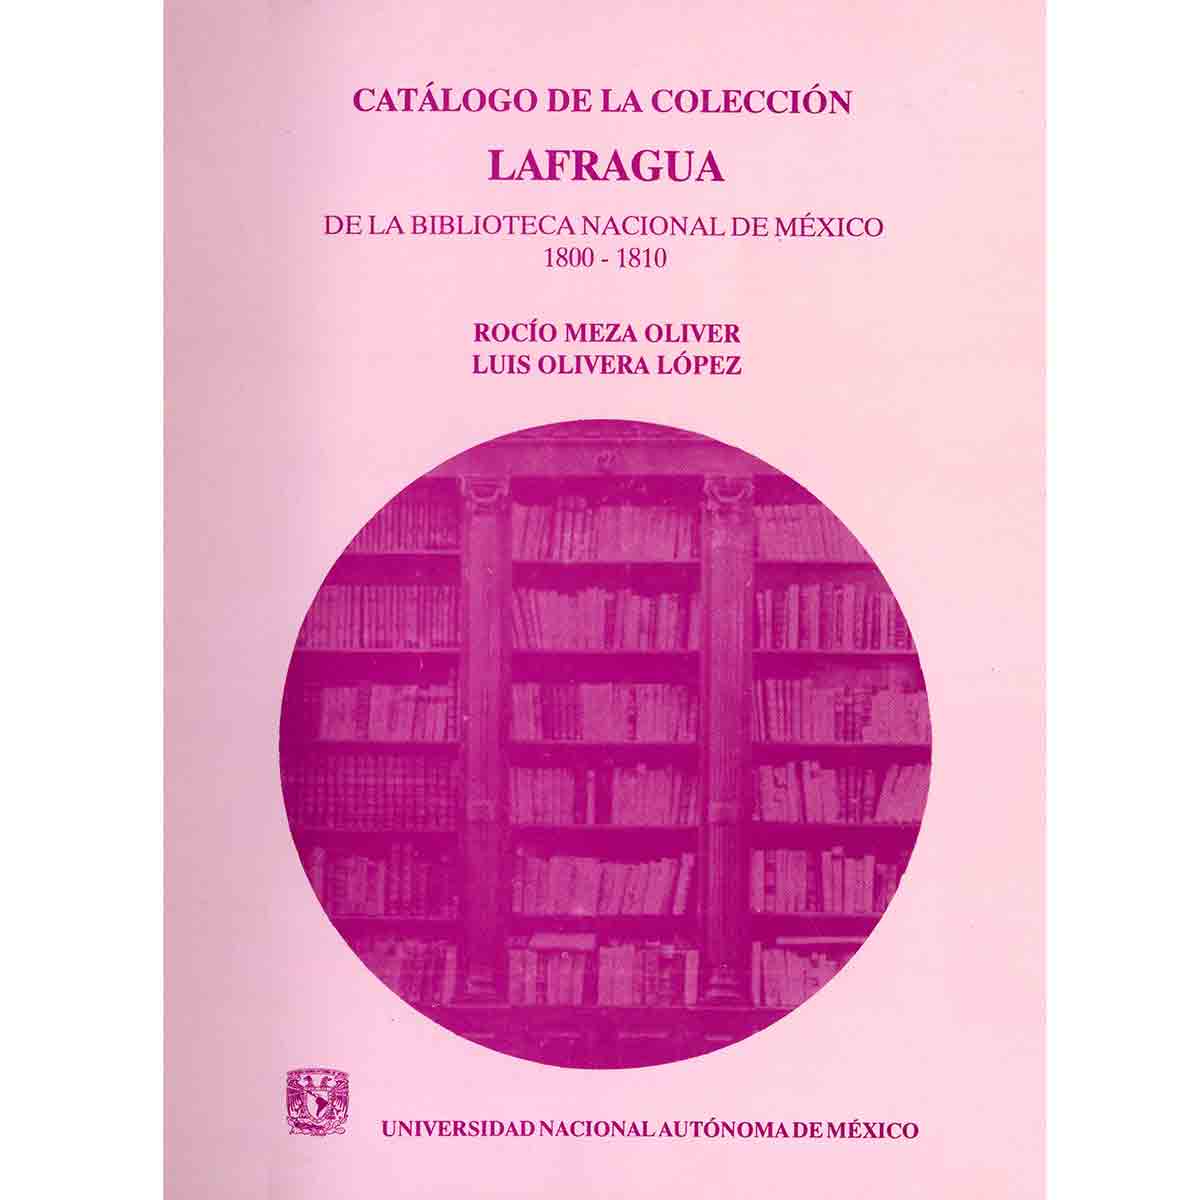 CATÁLOGO DE LA COLECCIÓN LAFRAGUA DE LA BIBLIOTECA NACIONAL DE MÉXICO, 1800-1810